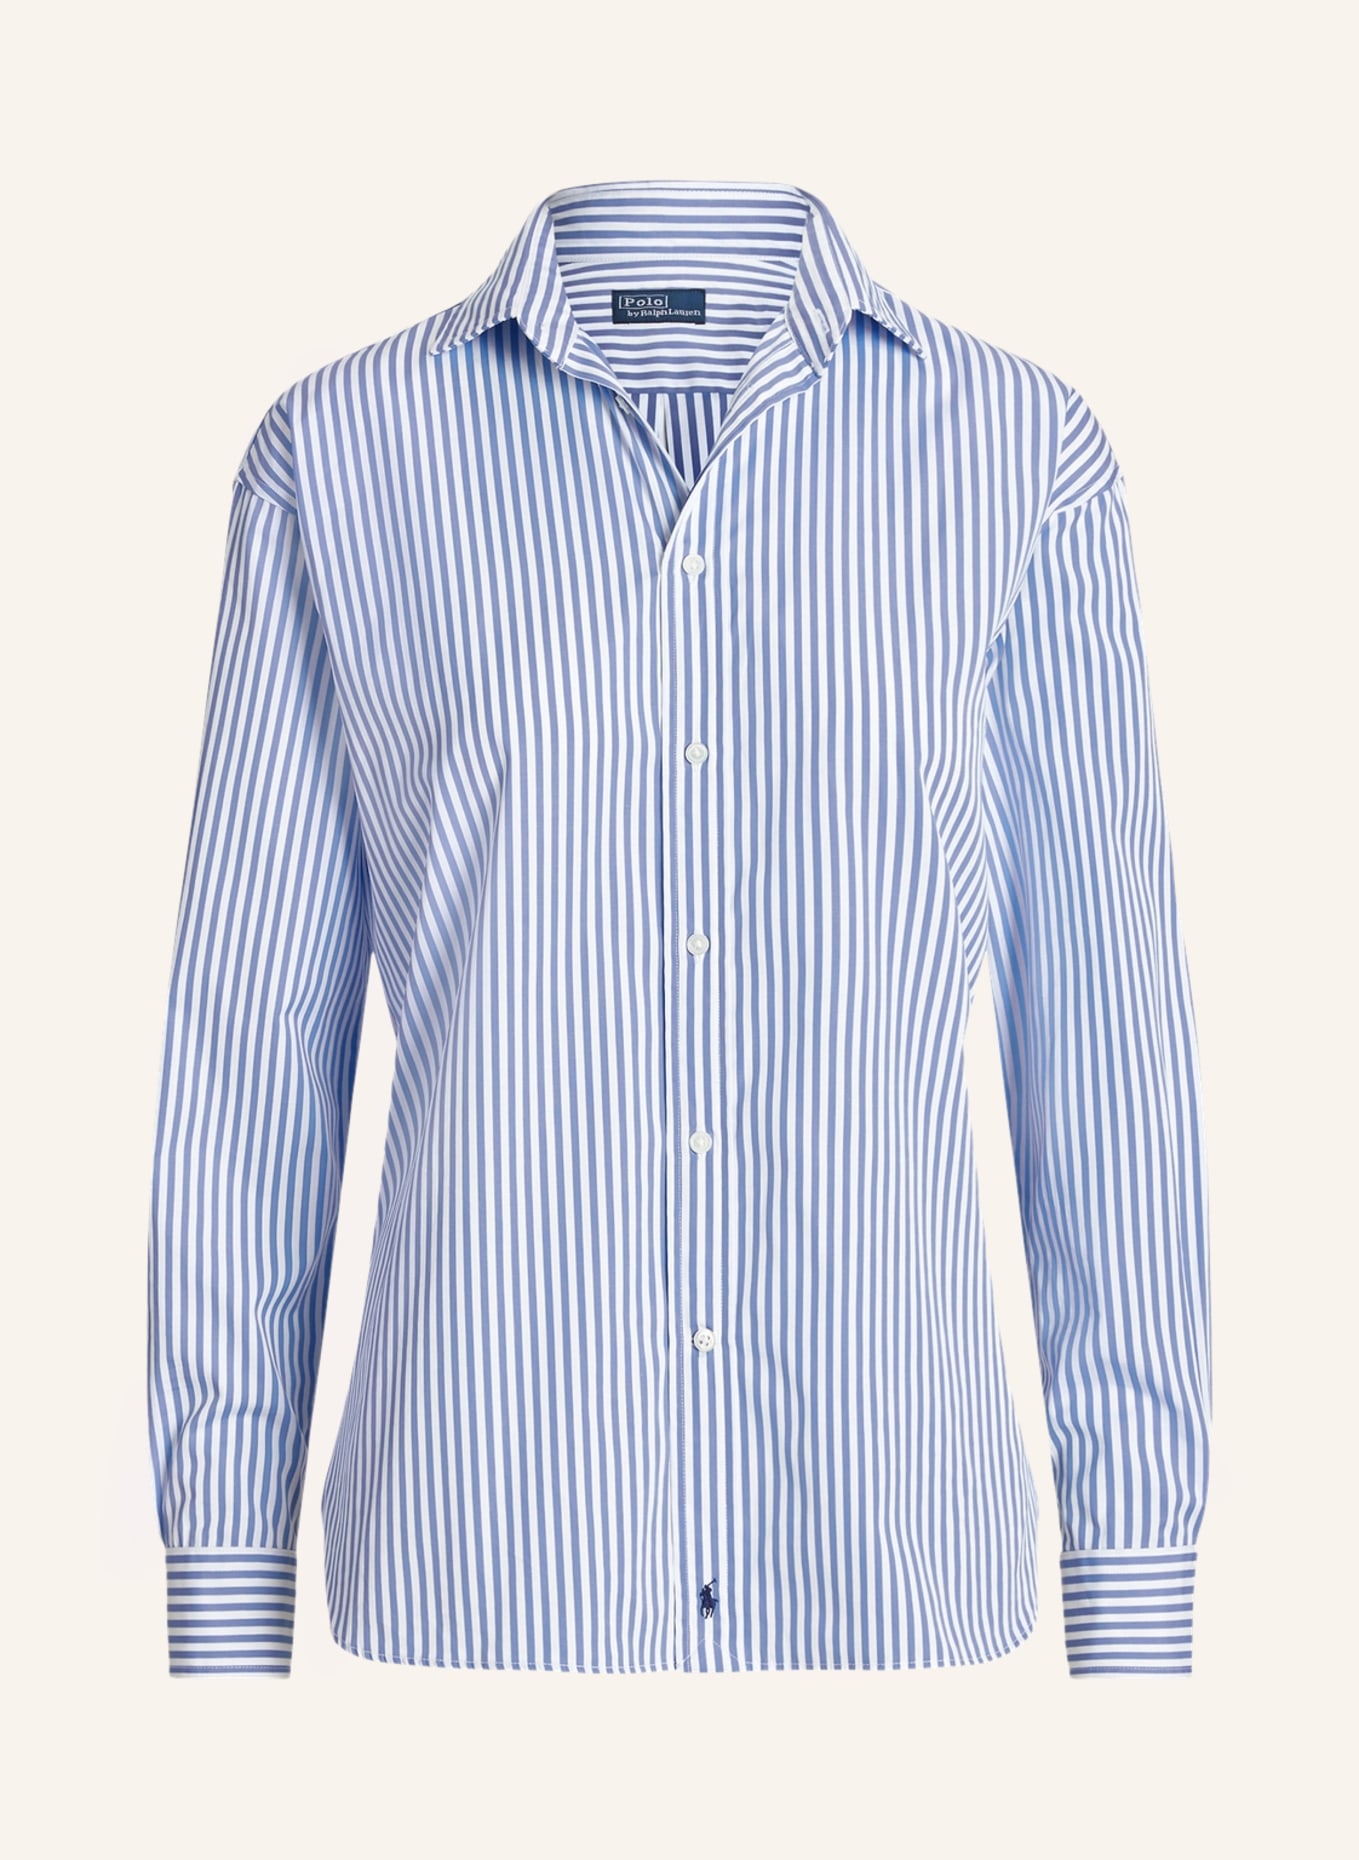 POLO RALPH LAUREN Shirt blouse, Color: WHITE/ LIGHT BLUE (Image 1)